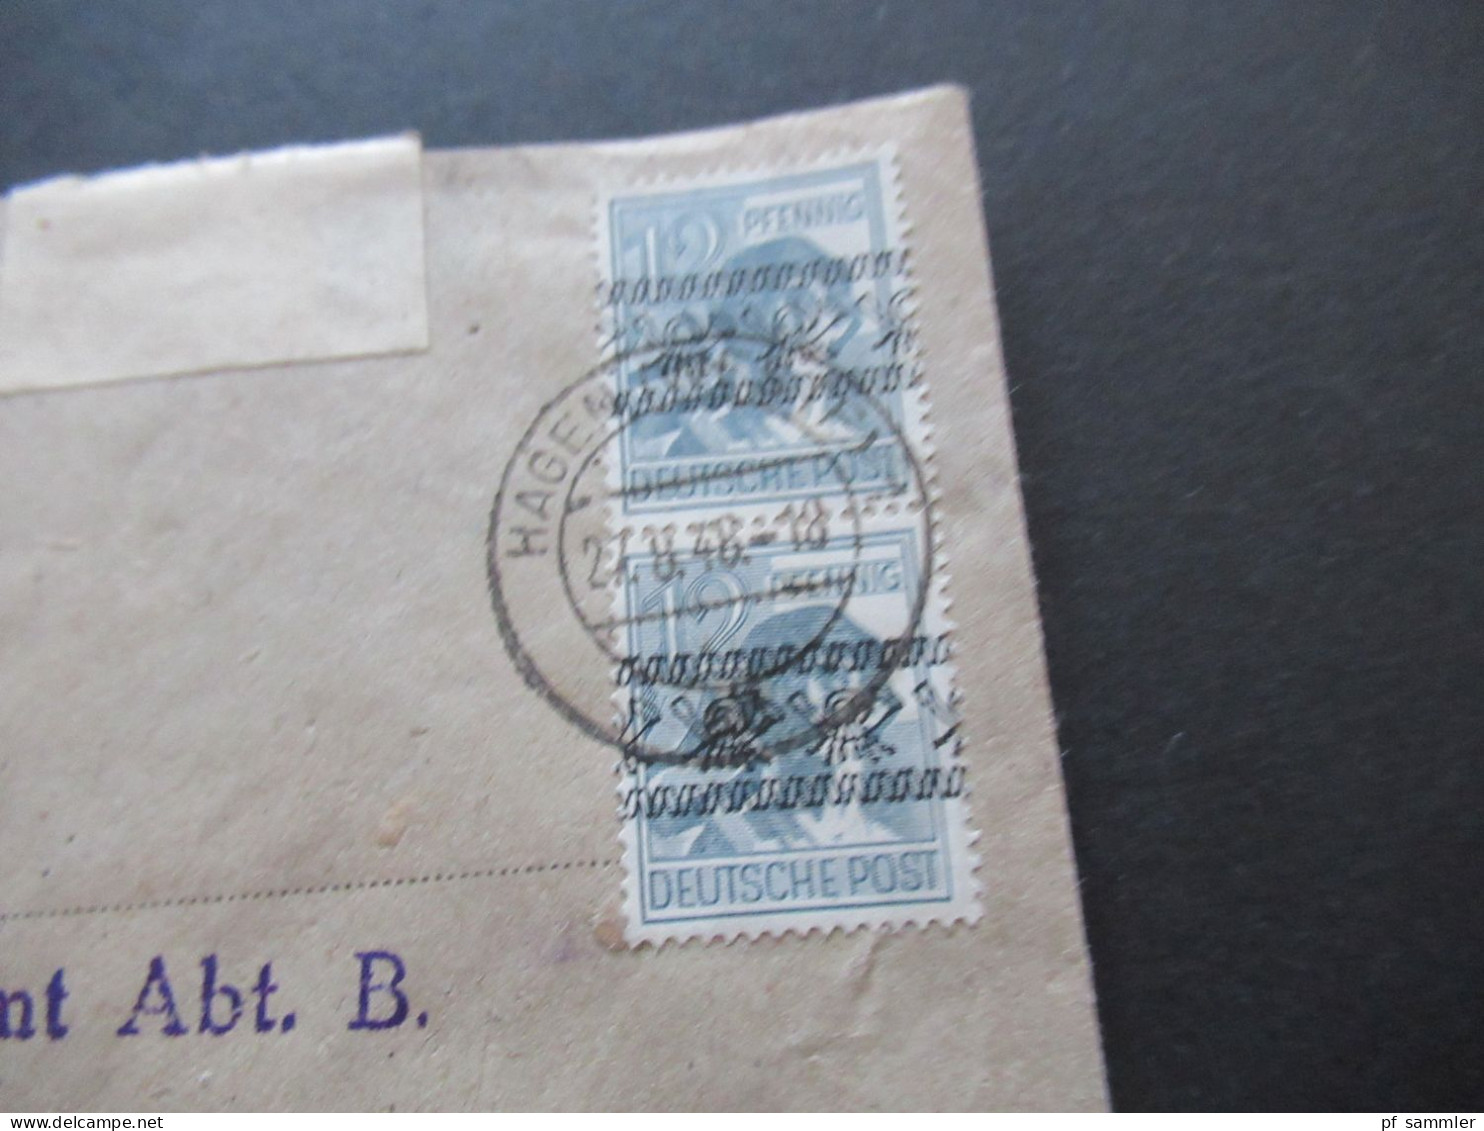 27.8.1948 Bizone Nr.40 I (2) MeF Stempel Gewerbeaufsichtsamt Hagen In Westfalen An Das Ernährungsamt In Menden - Lettres & Documents